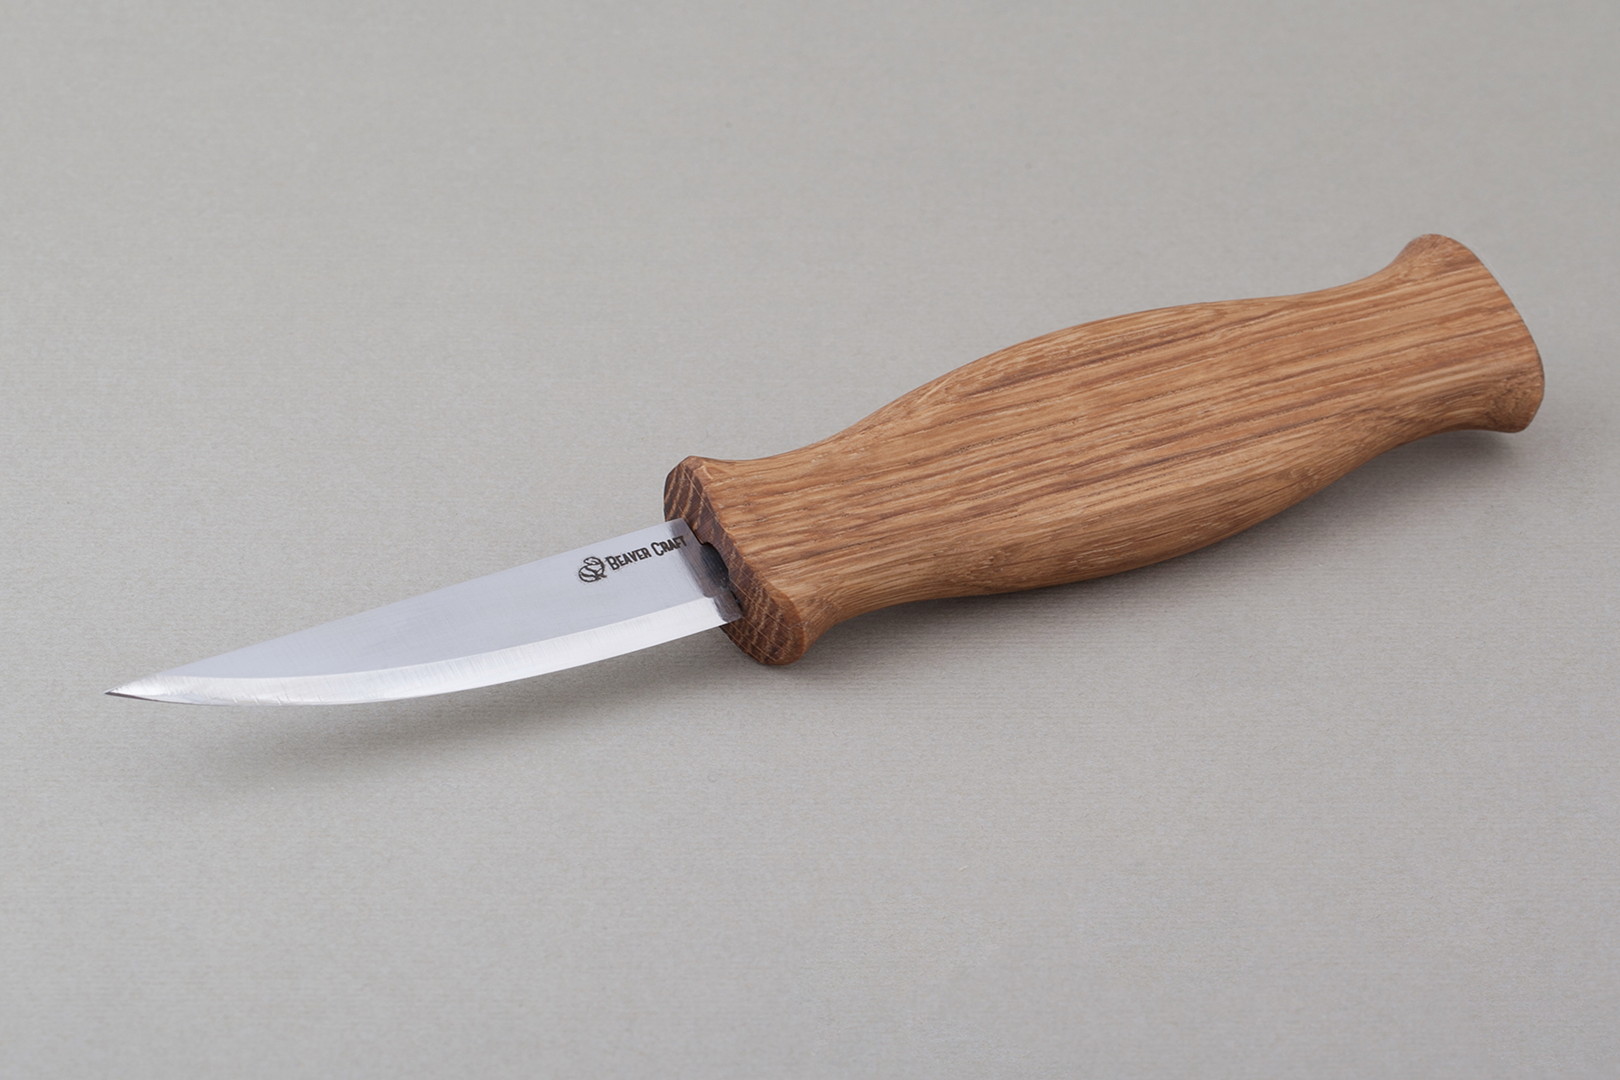 BeaverCraft C4 - Whittling Knife